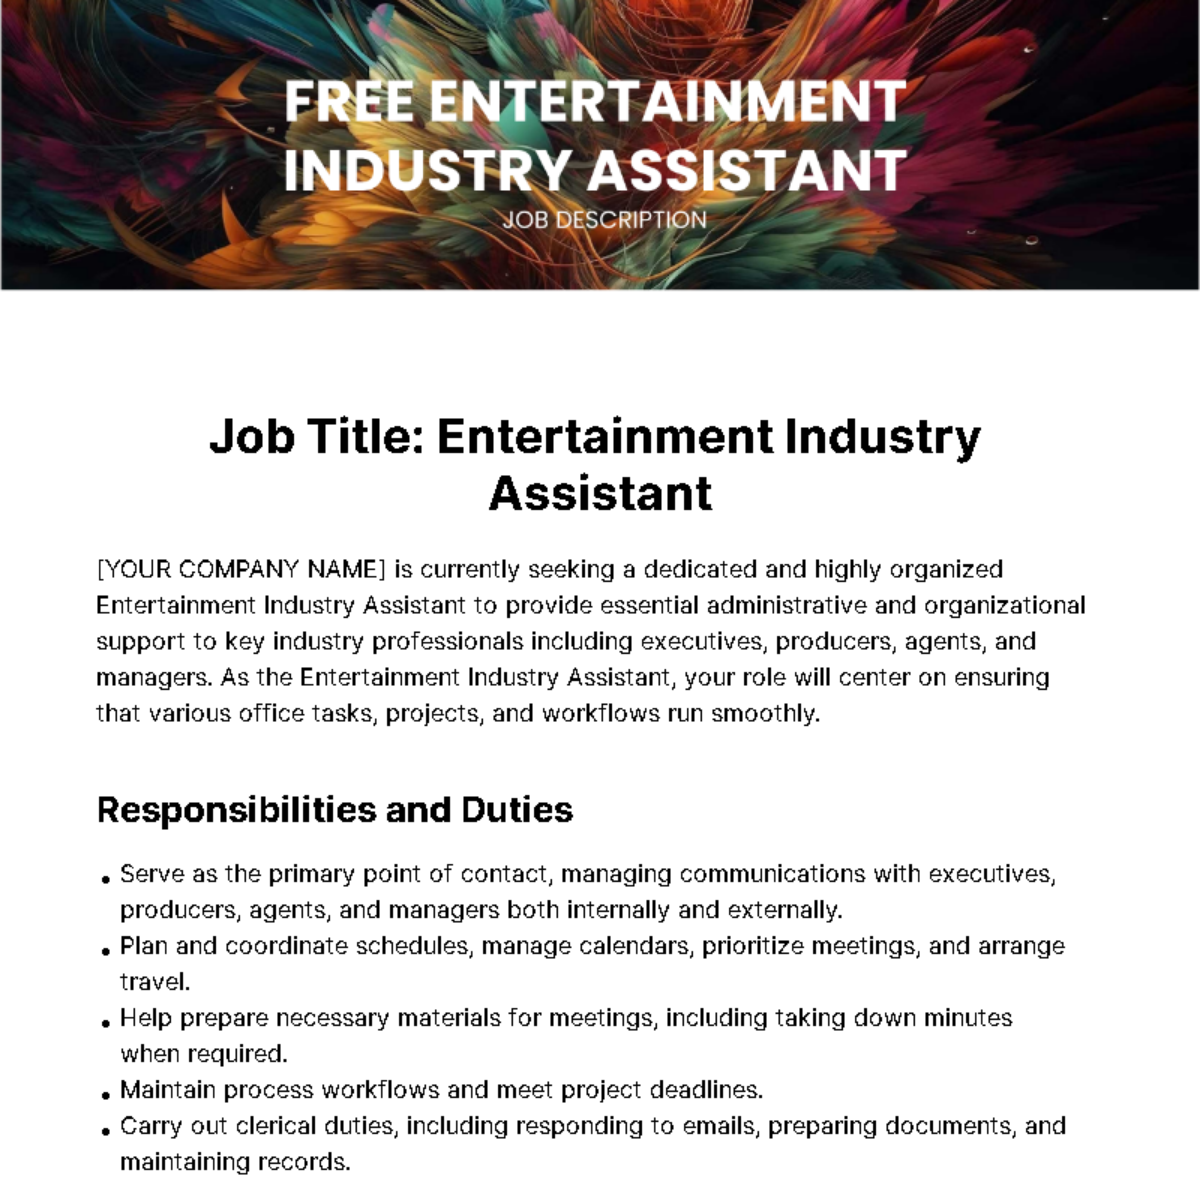 Free Entertainment Industry Assistant Job Description Template